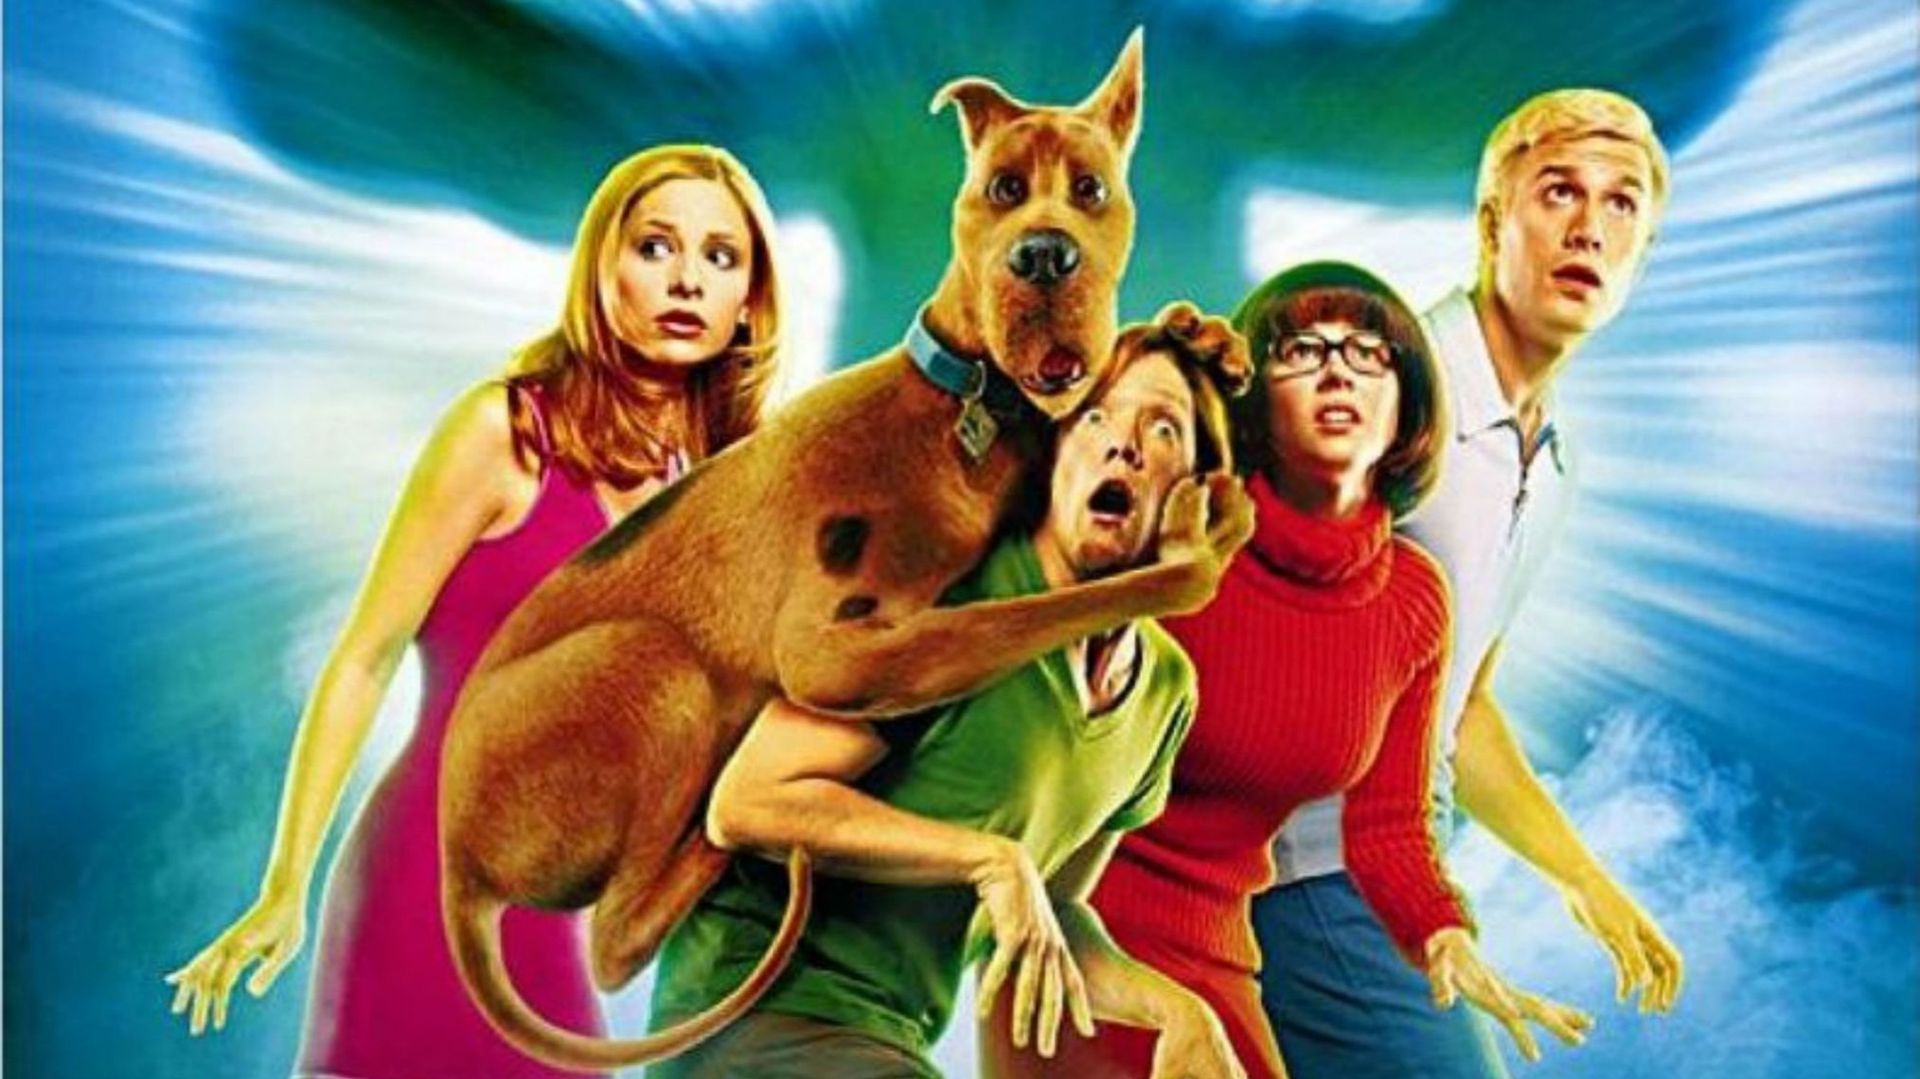 En 2002, le film "Scooby-Doo" a été un gros hit, il a rapporté 275 millions de dollars au box-office mondial